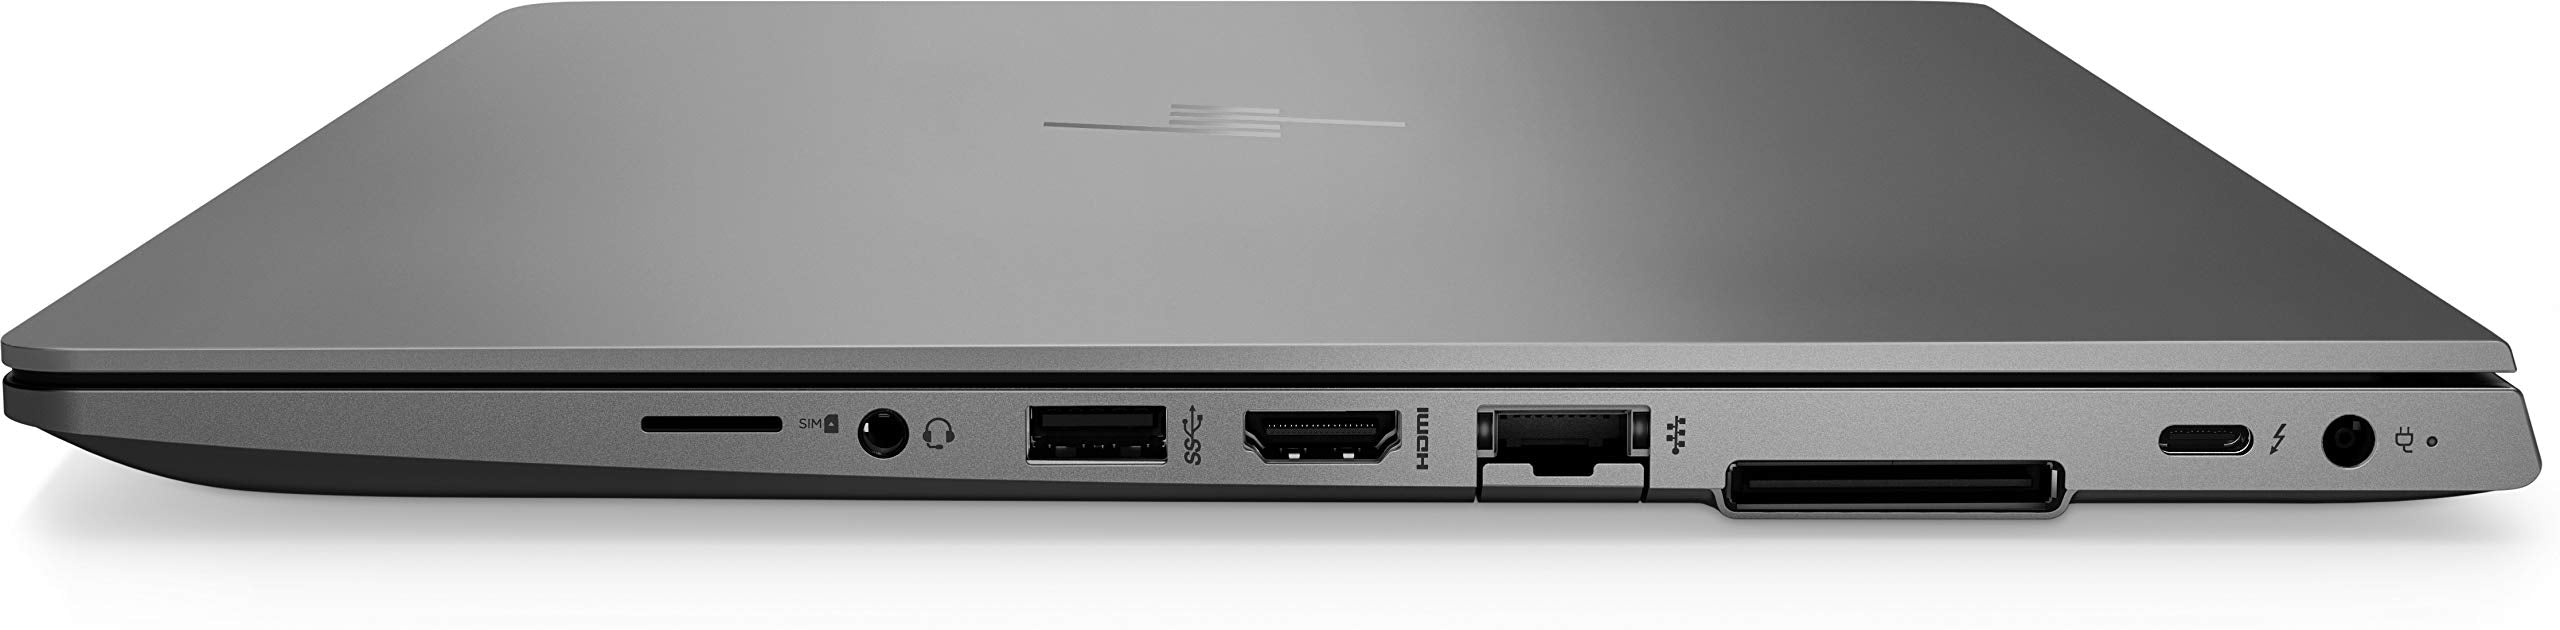 HP ZBook 14u G6 Mobile Workstation – i7-8565U (4.6GHz), 16GB DDR4, 1TB